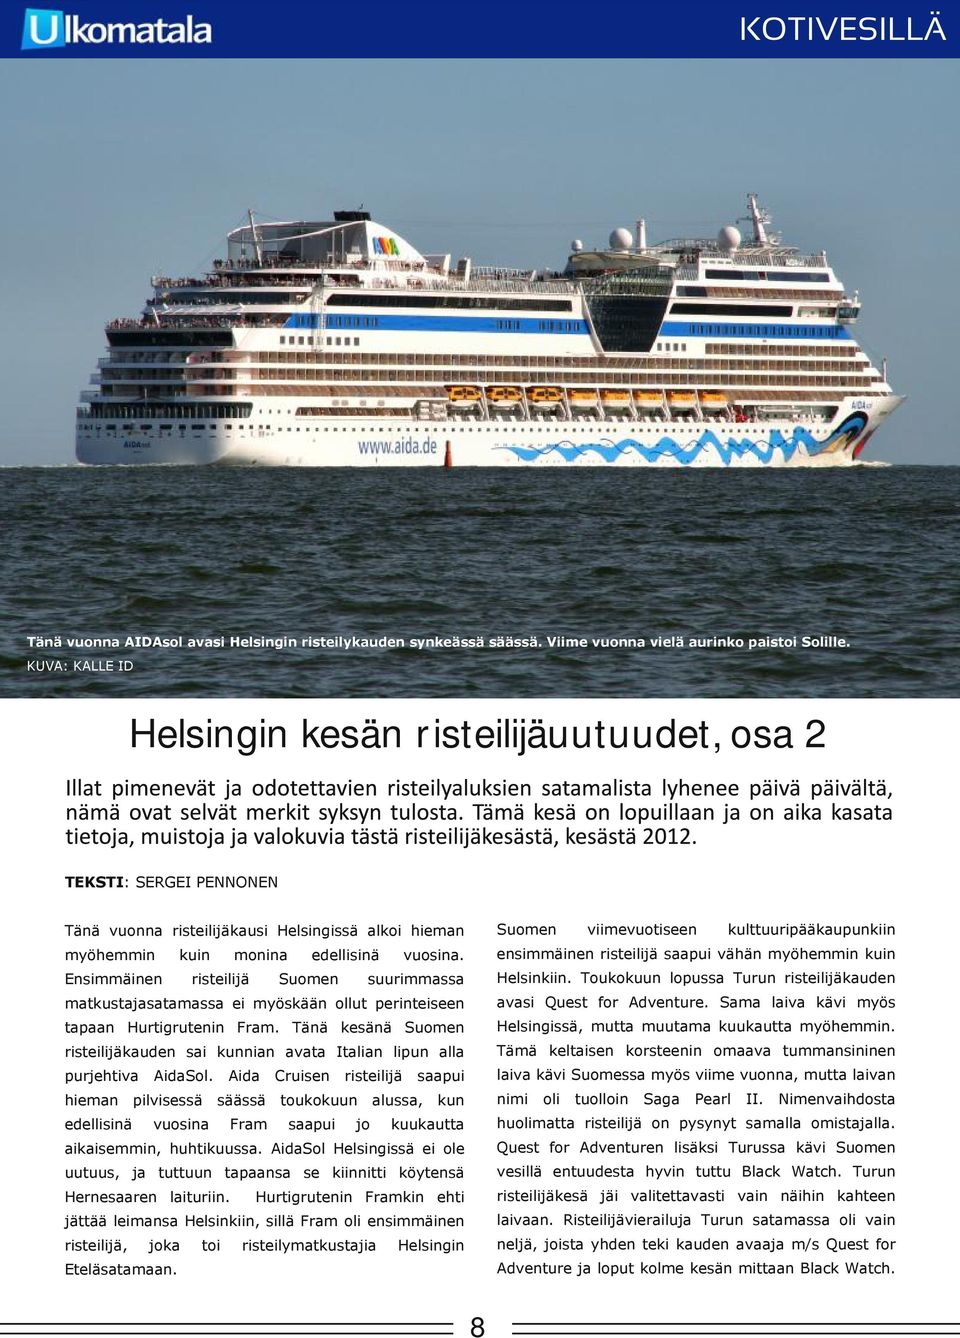 Toukokuun lopussa Turun risteilijäkauden myöhemmin kuin mina risteilijä edellisinä Suomen suurimmassa avasi Quest for Adventure. Sama laiva kävi myös Helsingissä, mutta muutama kuukautta myöhemmin.